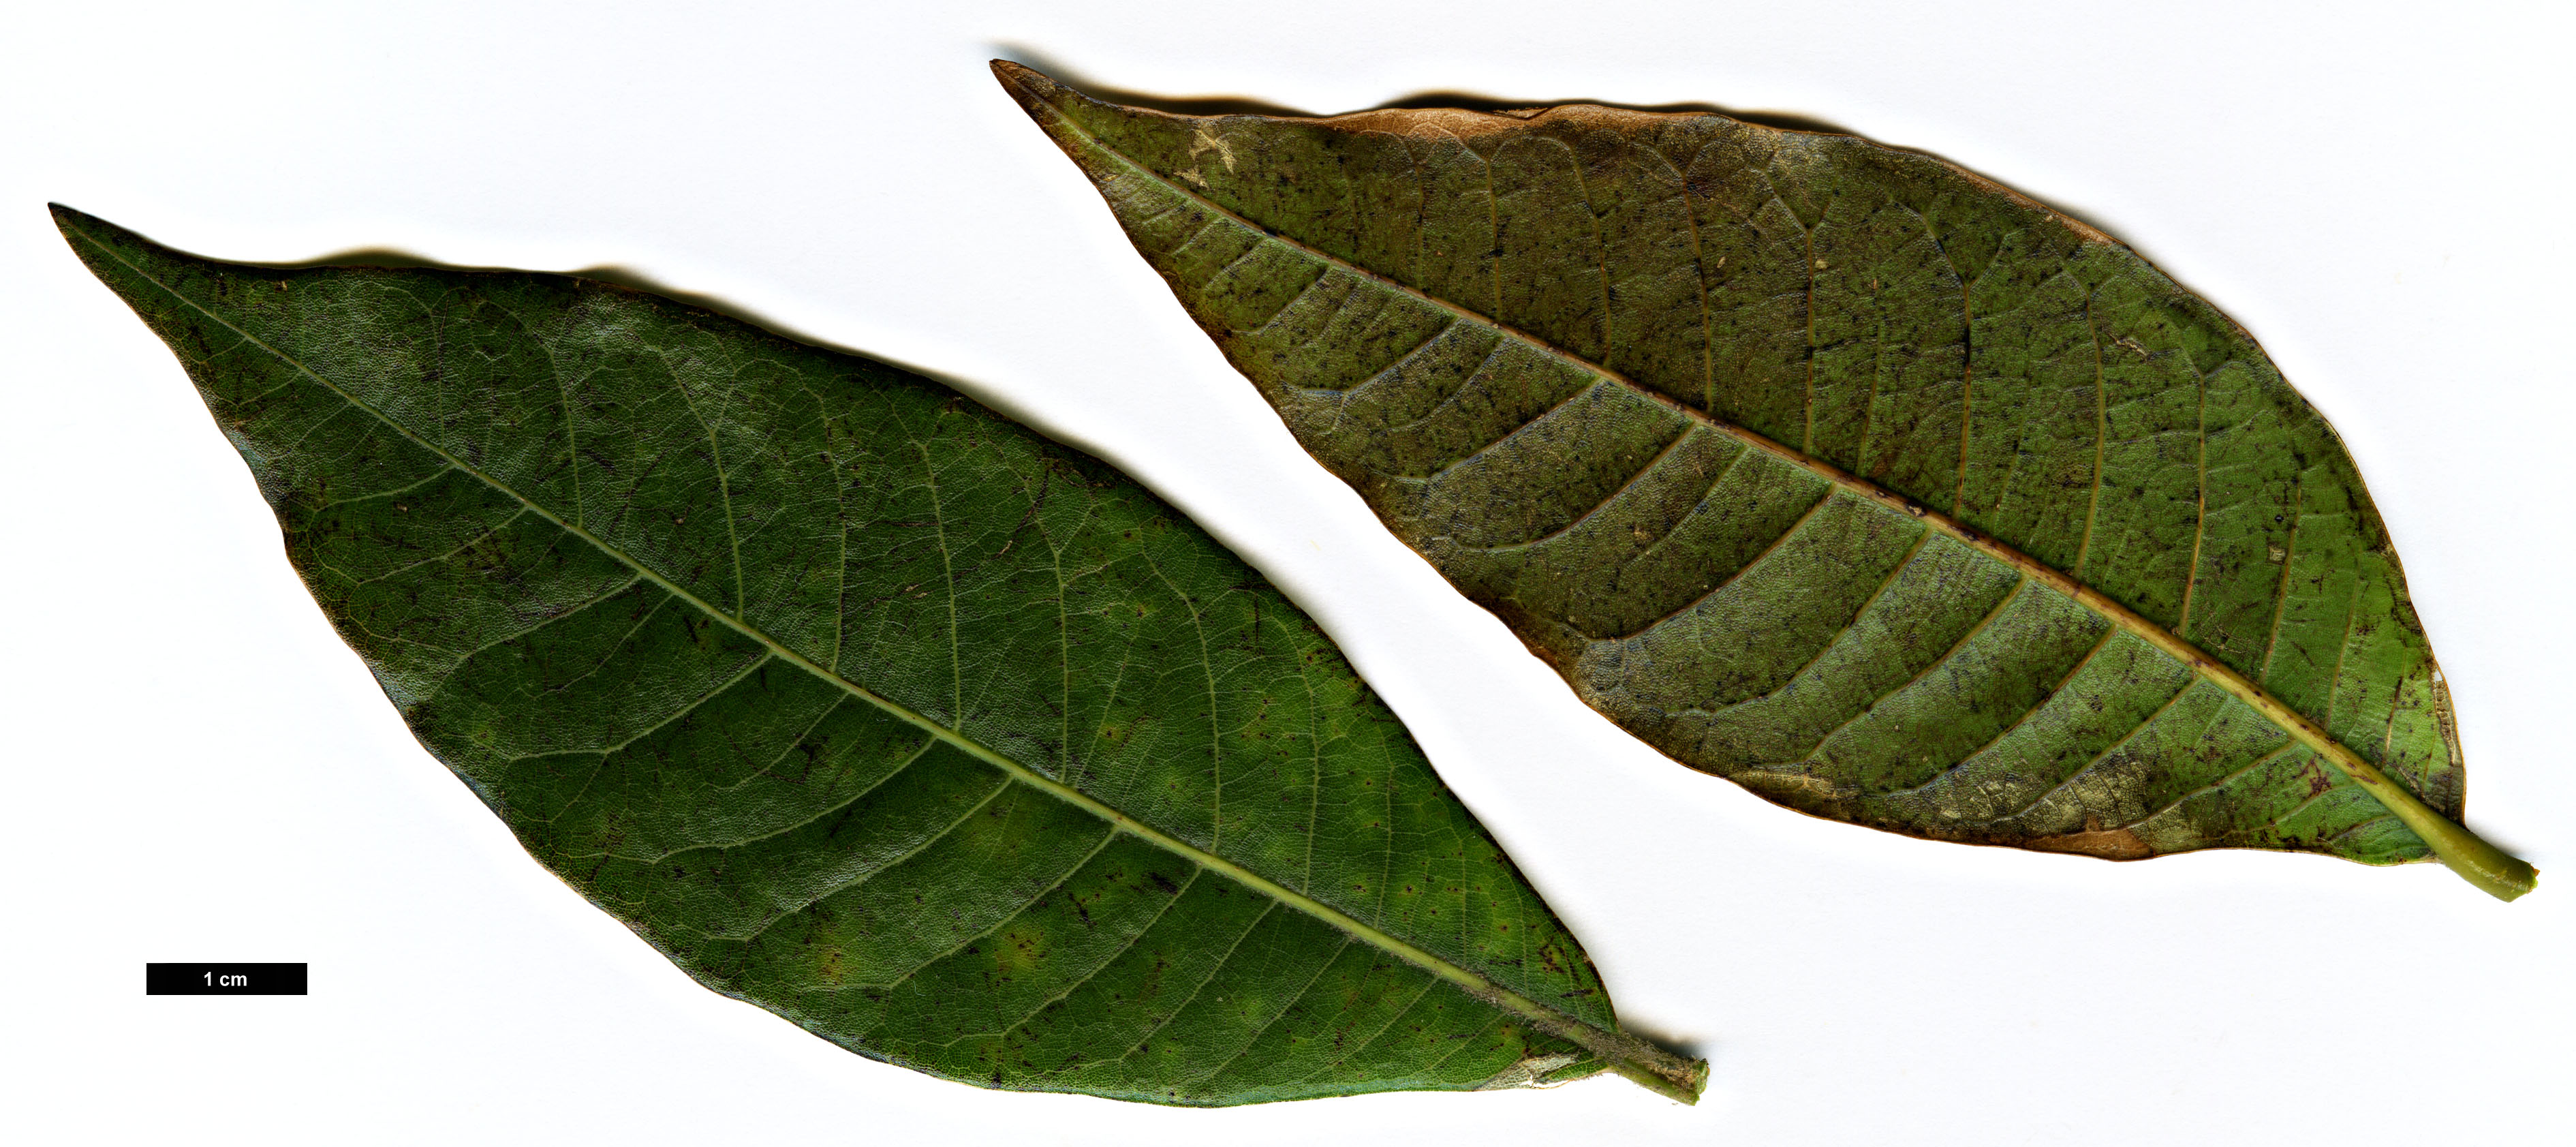 High resolution image: Family: Fagaceae - Genus: Quercus - Taxon: rapurahuensis